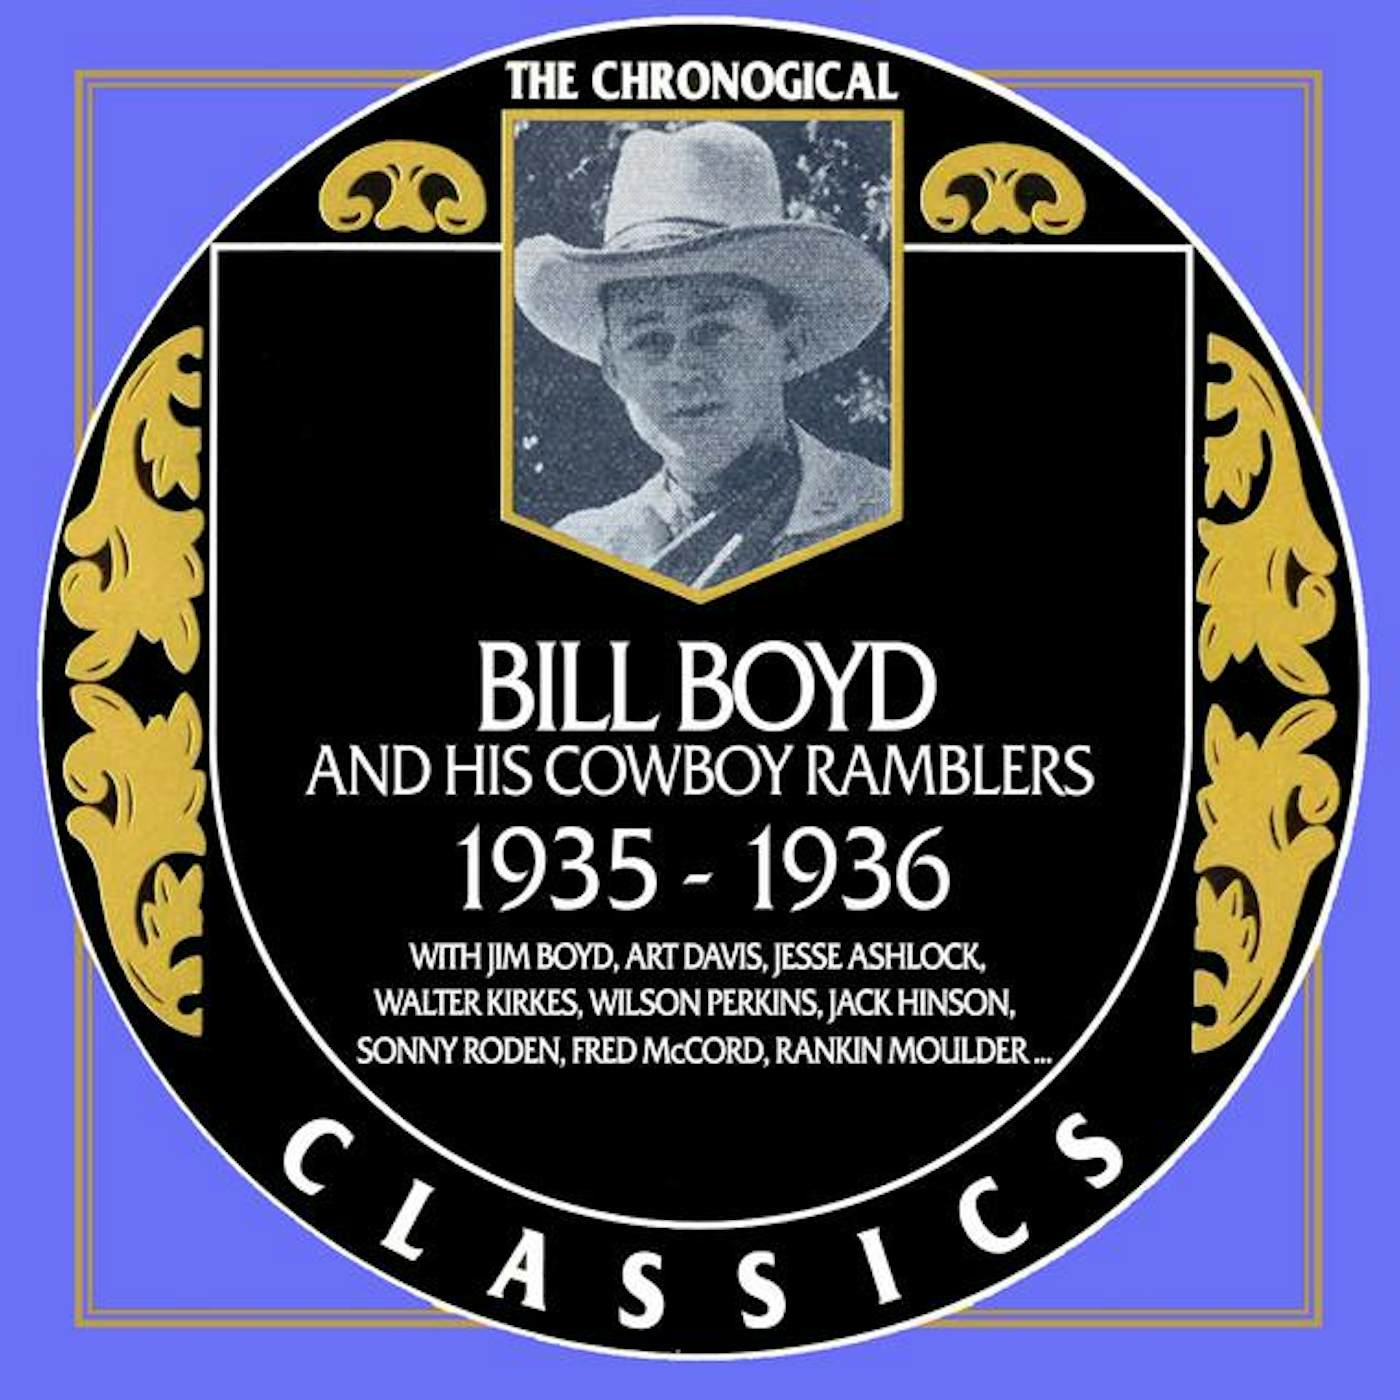 Bill Boyd